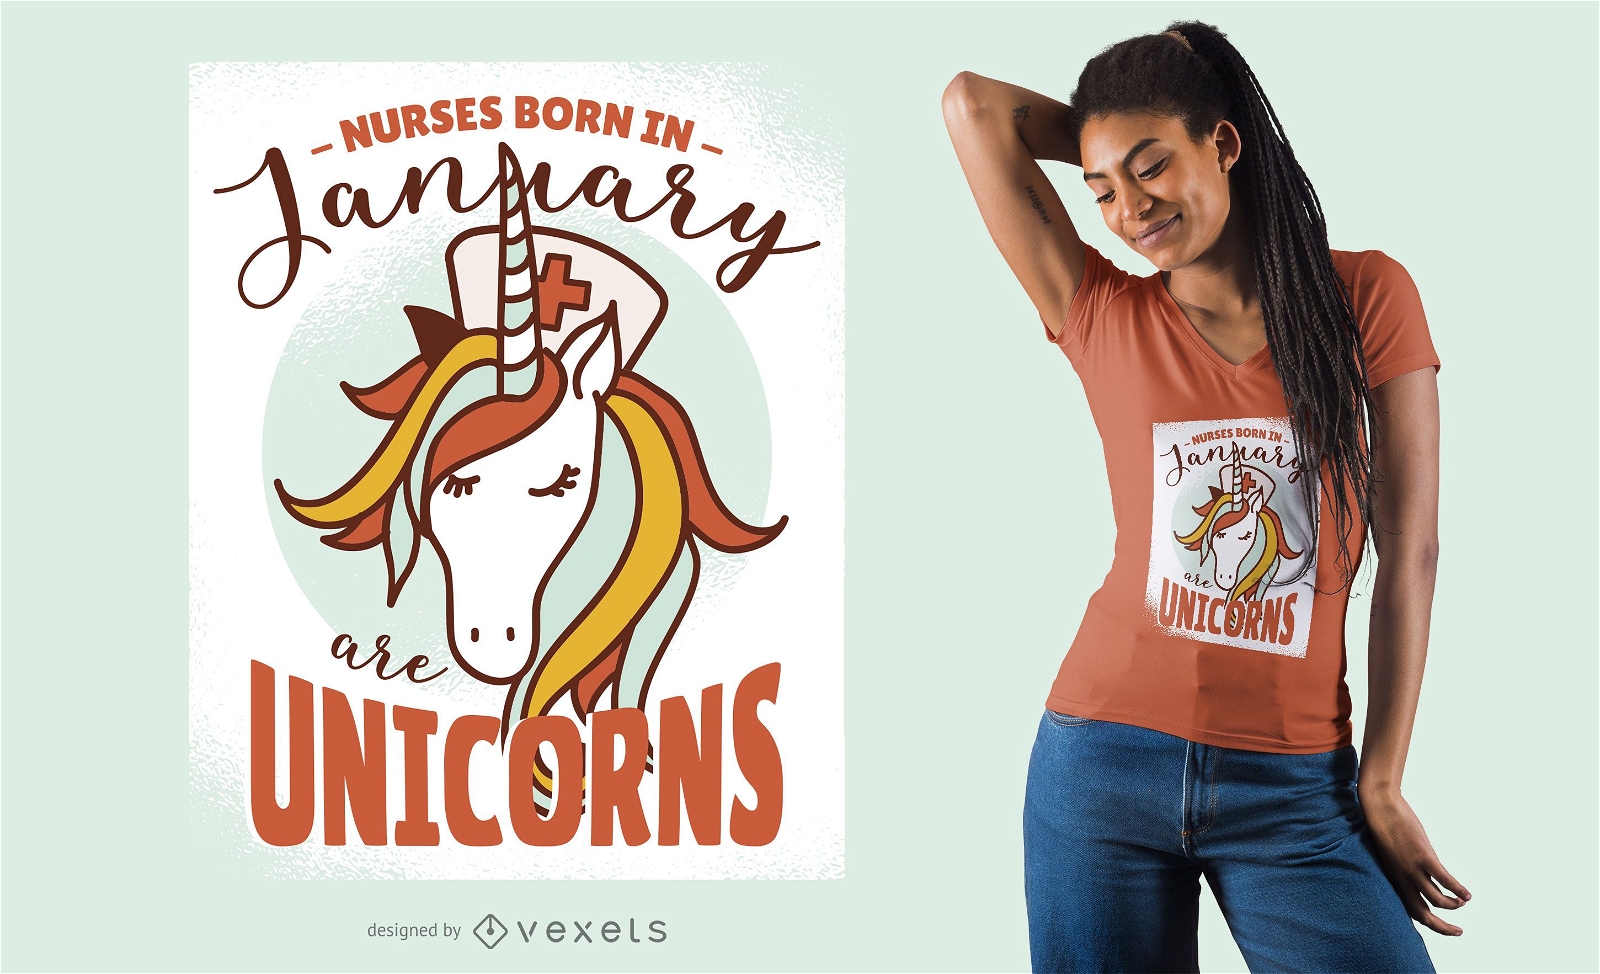 Las enfermeras son dise?o de camiseta de unicornios